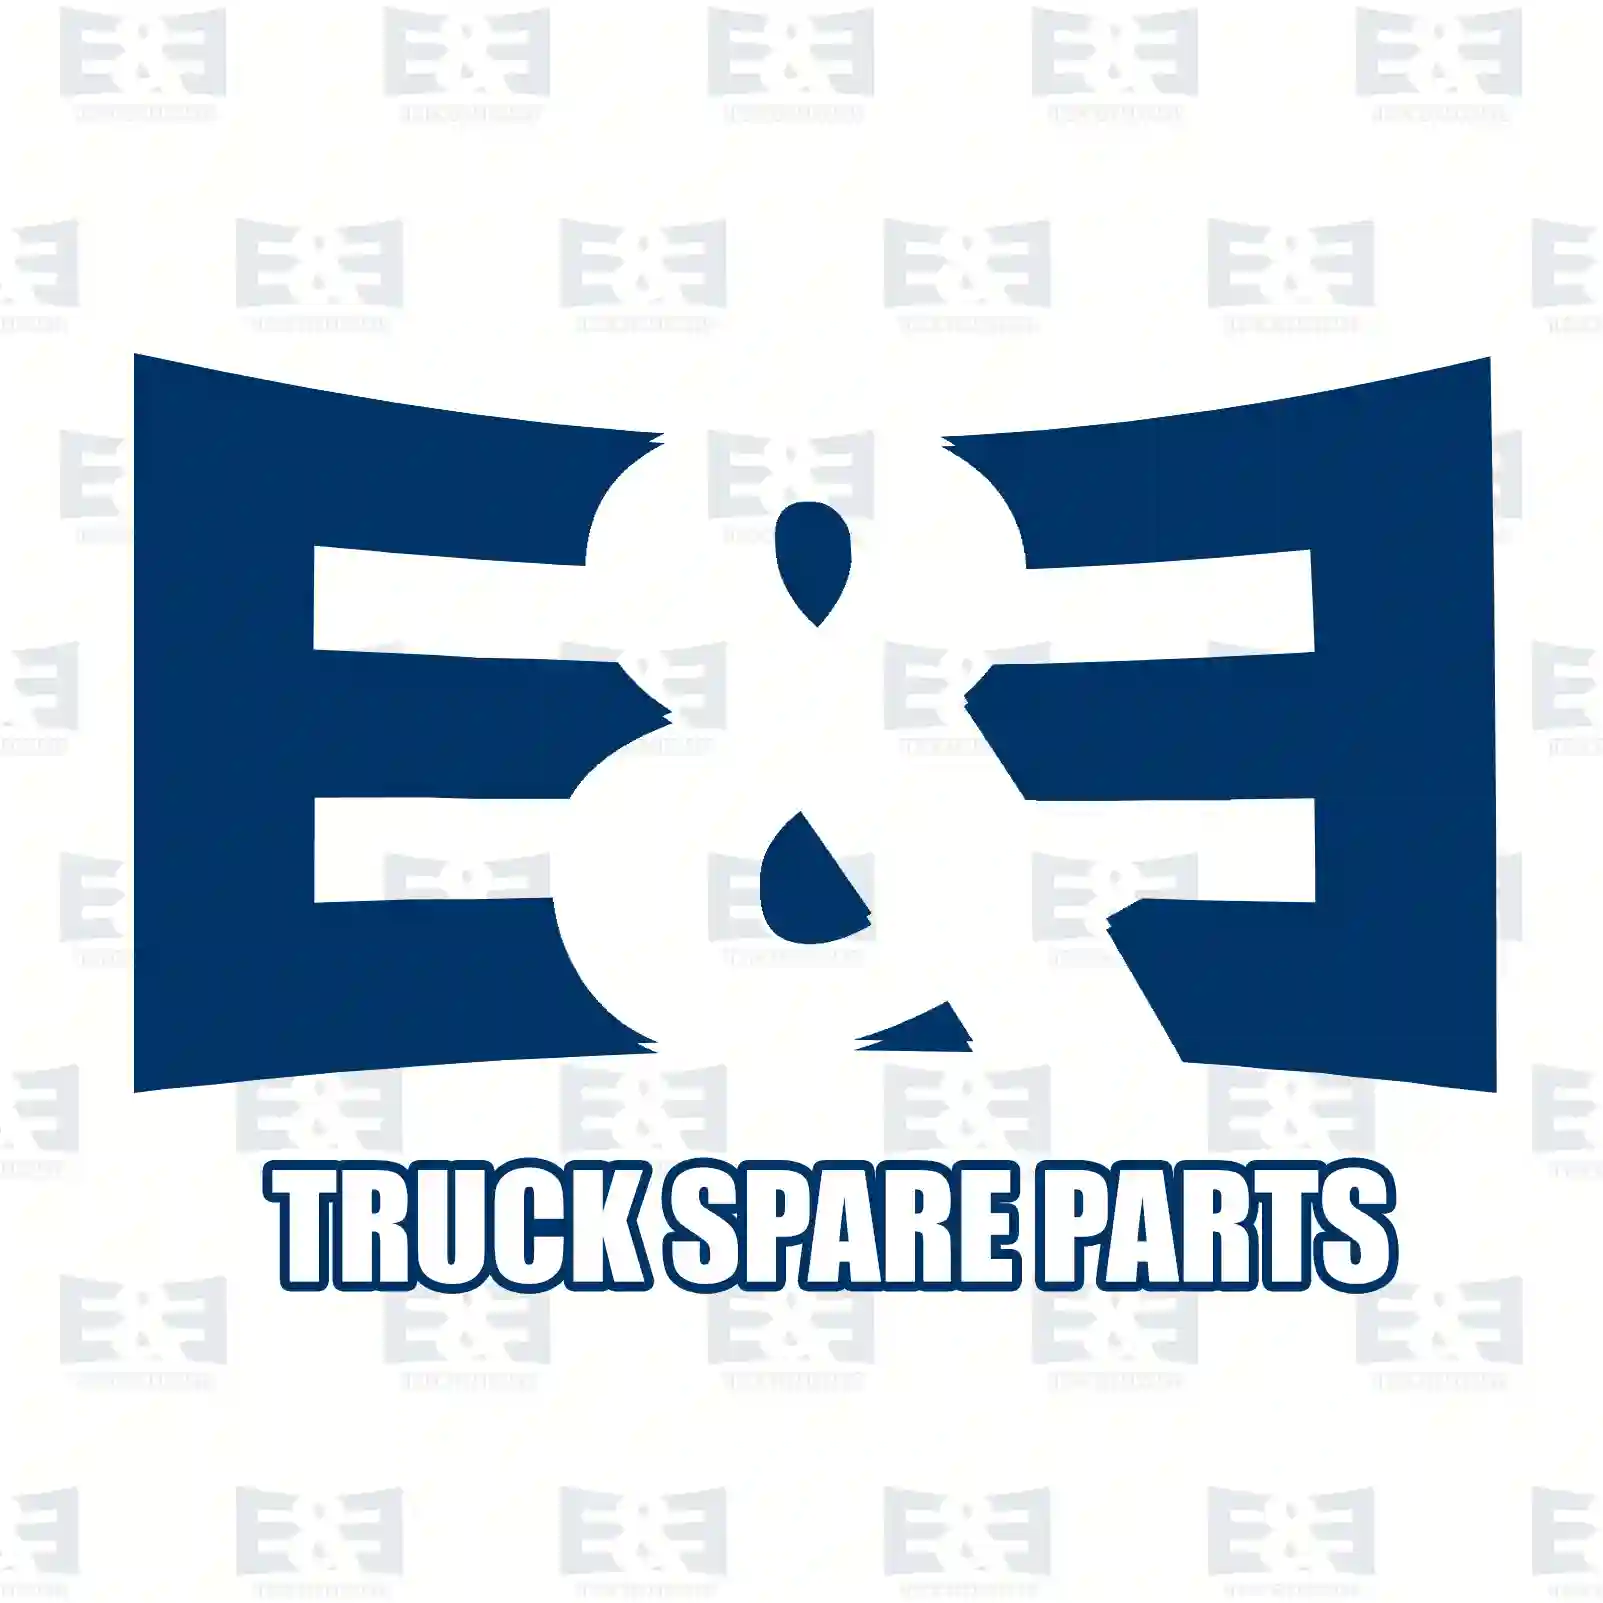 Follower, 2E2278050, 1316304167, 1621155, 1677433, 2119223, 42540020, 42549967, 81324020210, 81324020236, 82324020013, 5001861985, 5001866445, 7485147395, 1544080, 1790675, 85142094 ||  2E2278050 E&E Truck Spare Parts | Truck Spare Parts, Auotomotive Spare Parts Follower, 2E2278050, 1316304167, 1621155, 1677433, 2119223, 42540020, 42549967, 81324020210, 81324020236, 82324020013, 5001861985, 5001866445, 7485147395, 1544080, 1790675, 85142094 ||  2E2278050 E&E Truck Spare Parts | Truck Spare Parts, Auotomotive Spare Parts